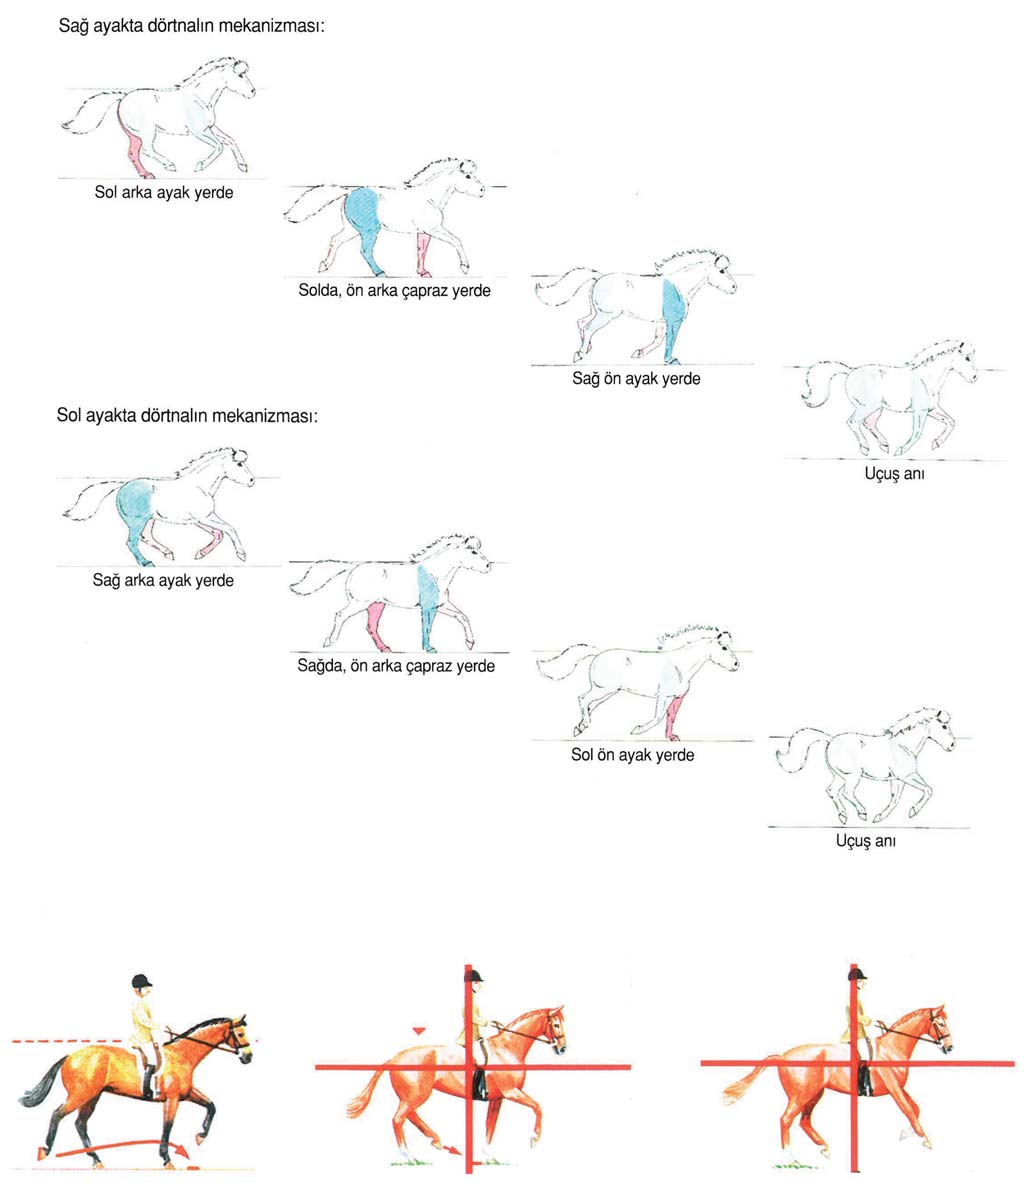 3 Dörtnal Dörtnal, en hızlı yürüme şeklidir. Dörtnalın hızı, bir at için saatte yaklaşık 20-30 km dir. Yarış atı saatte yaklaşık 60 km koşar.